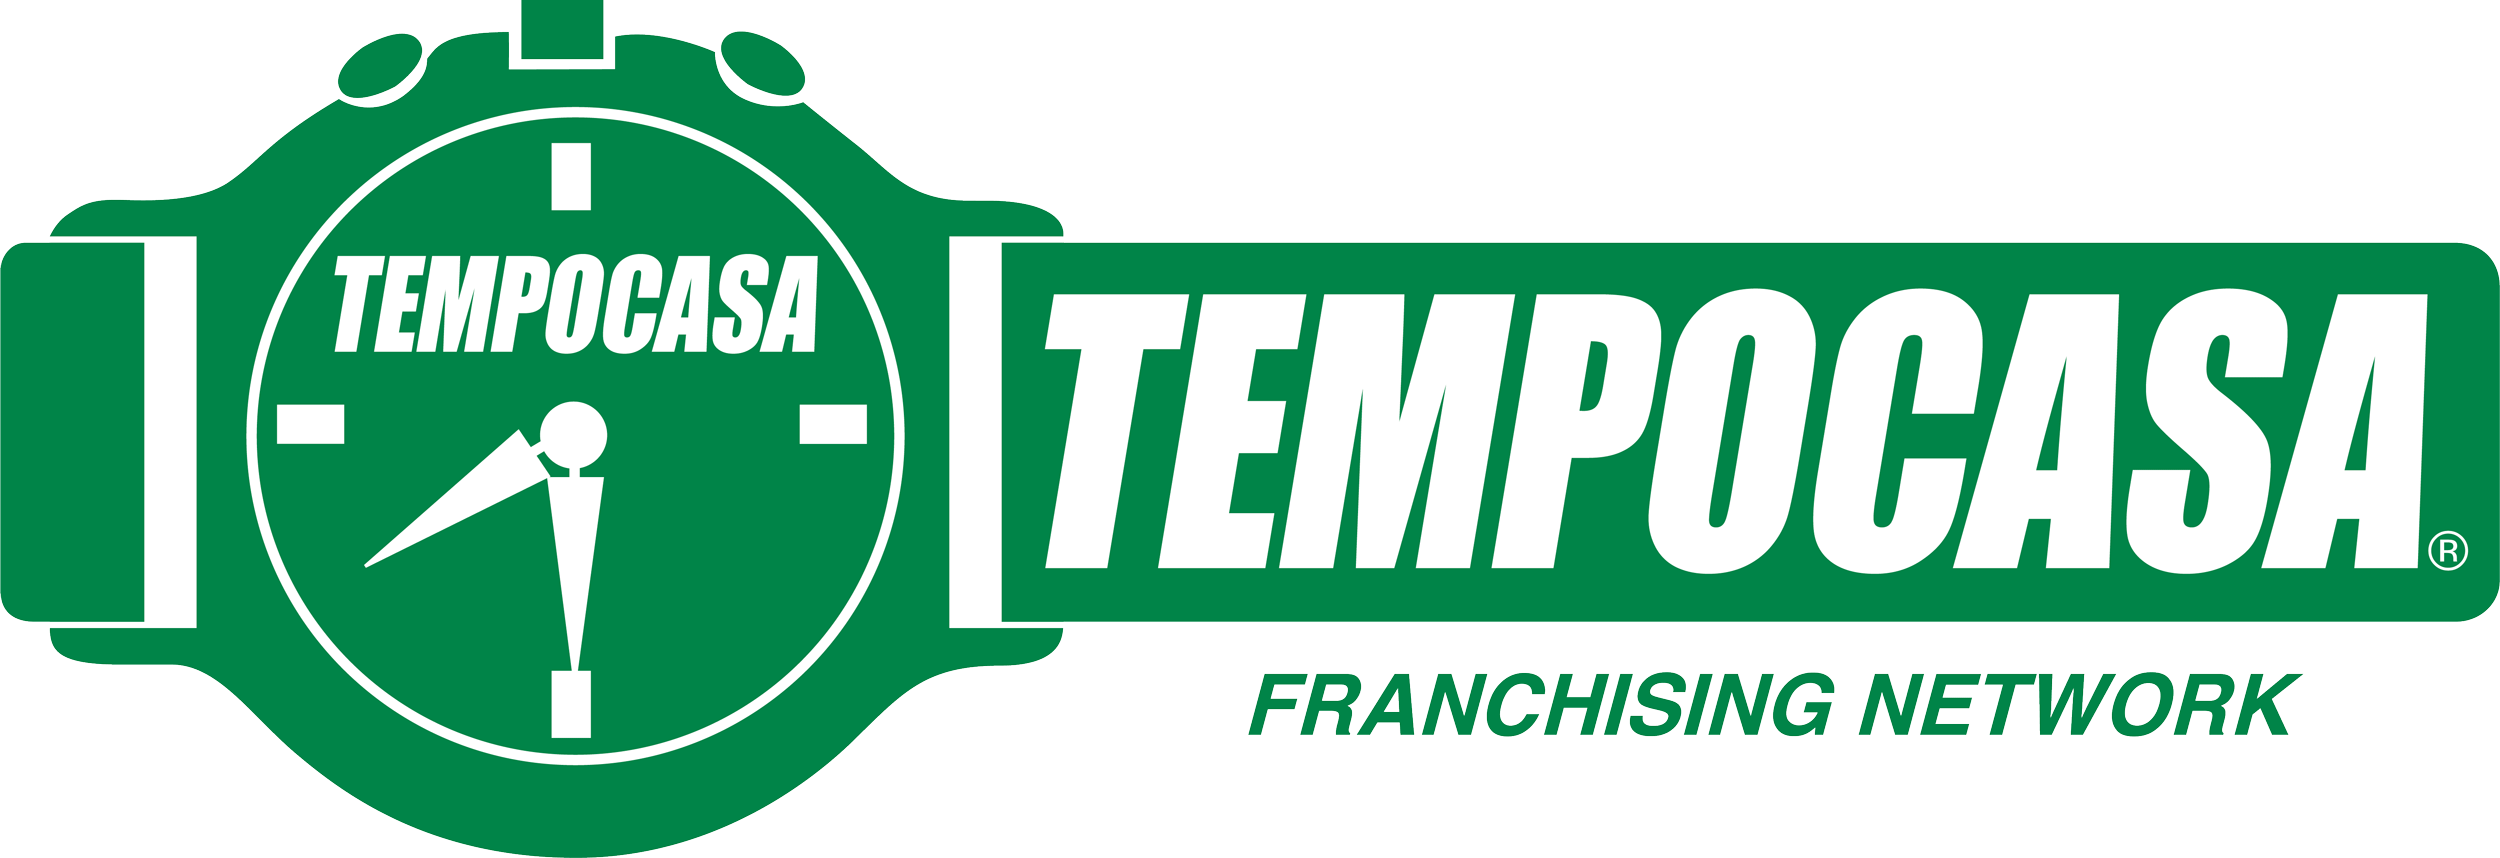 Tempoaffitti - Monza - Tempocasa